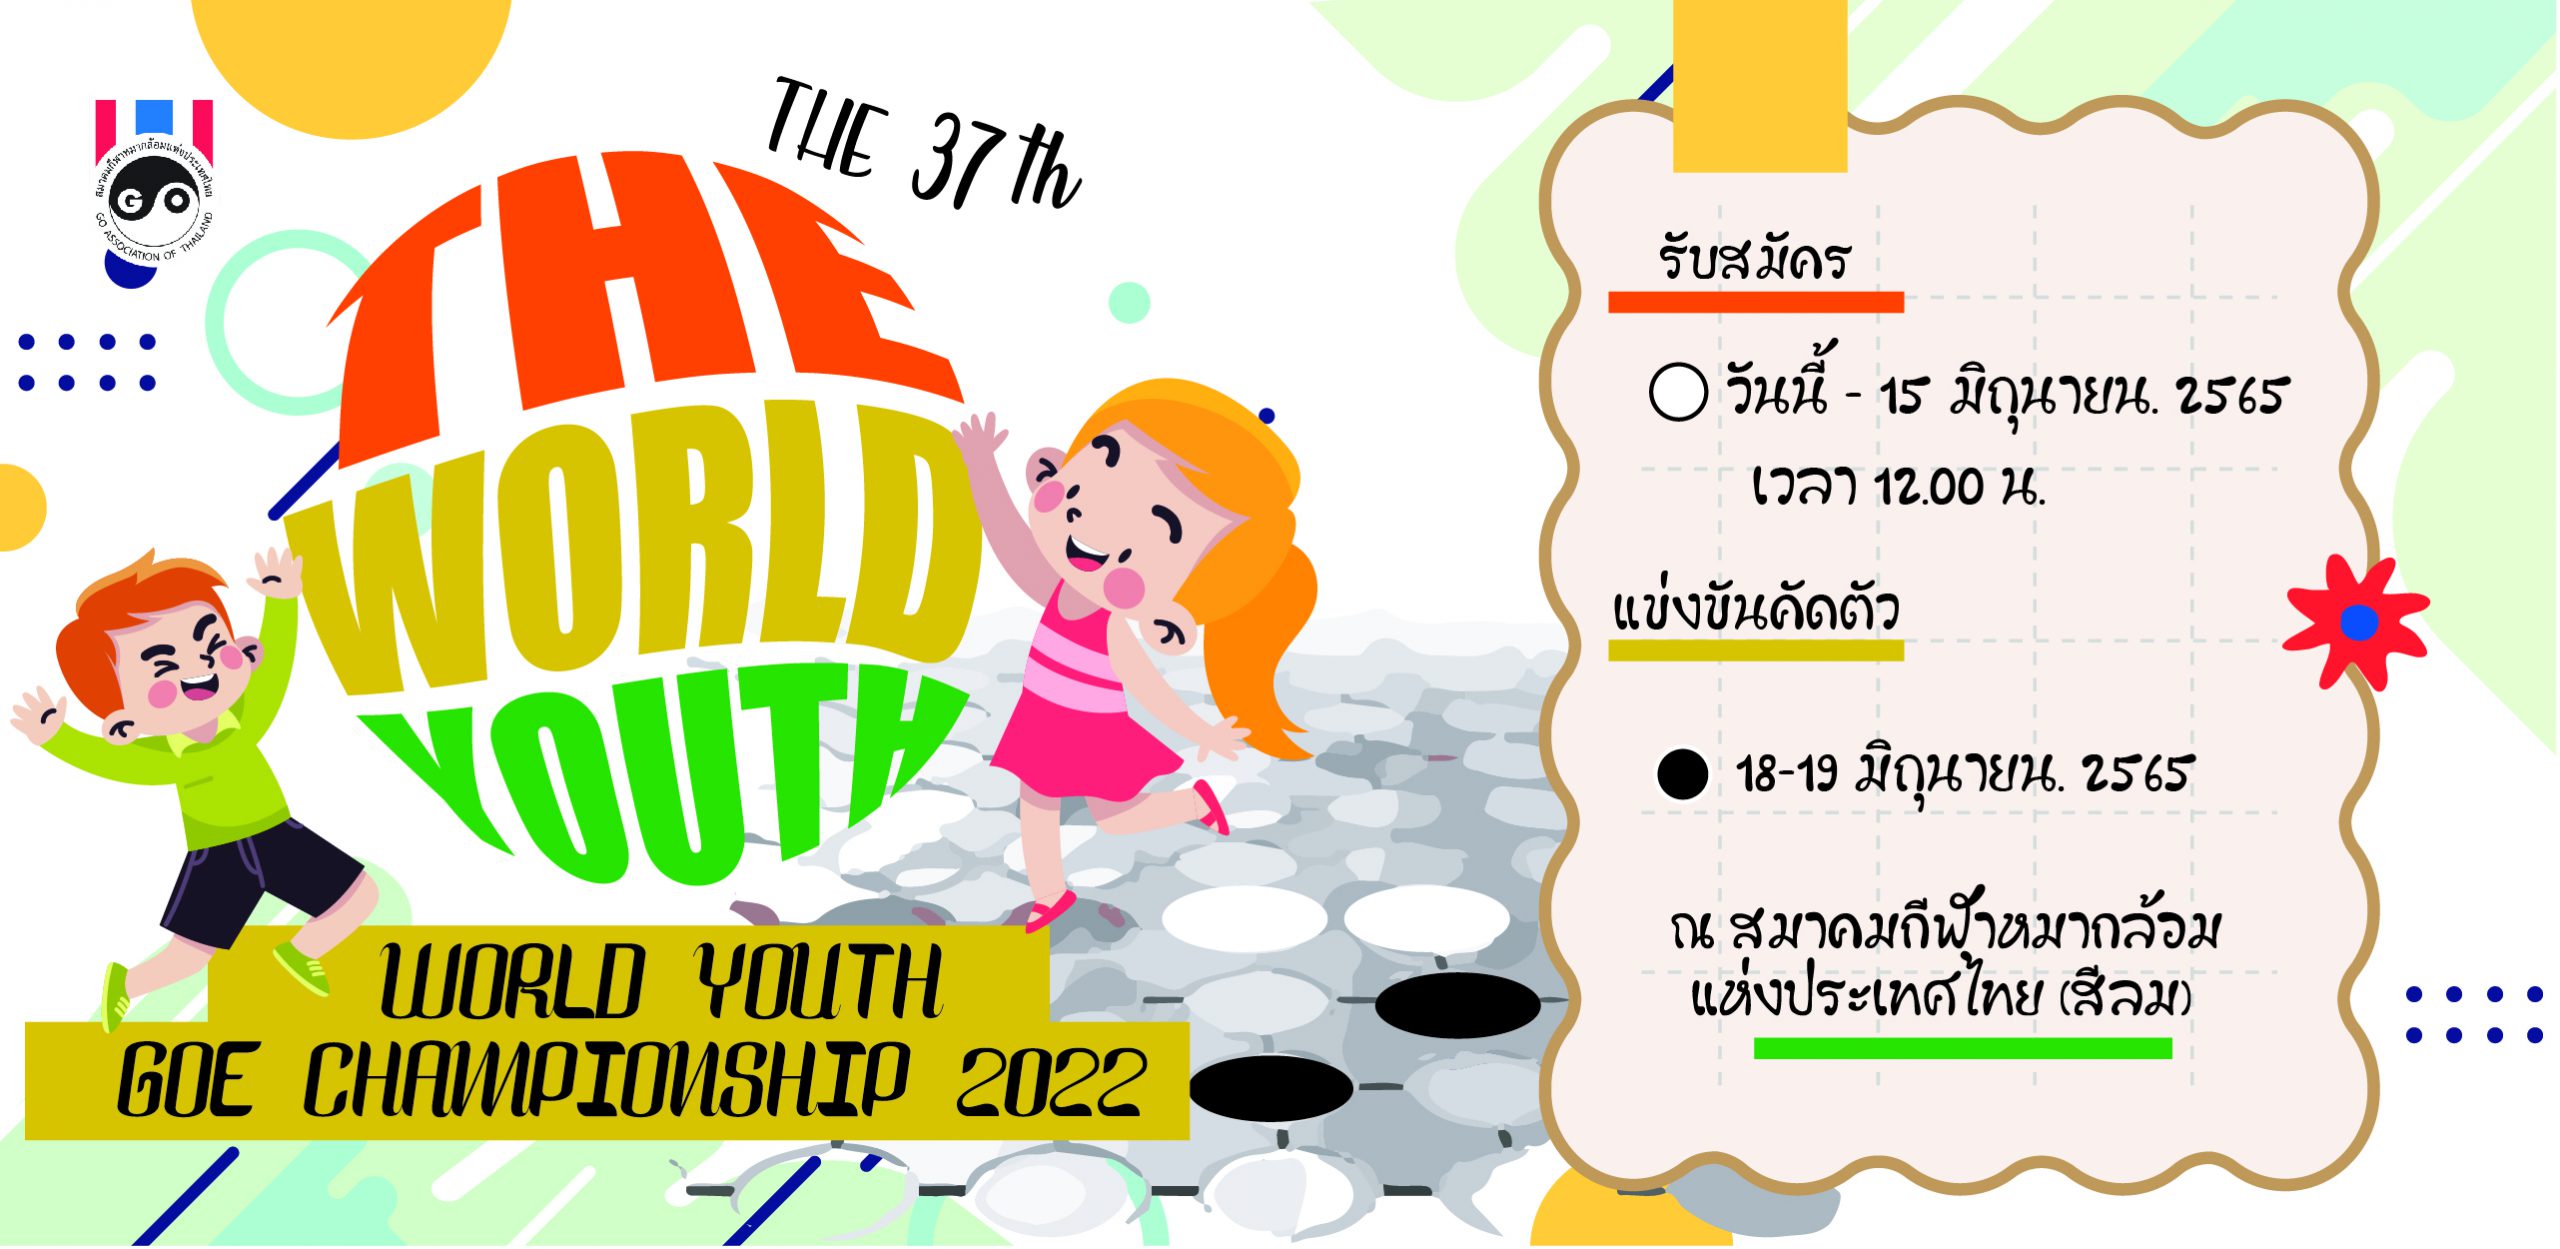 รับสมัครคัดเลือกตัวแทนประเทศไทยเข้าร่วมแข่งขัน The 37 th World Youth Goe Championship 2022